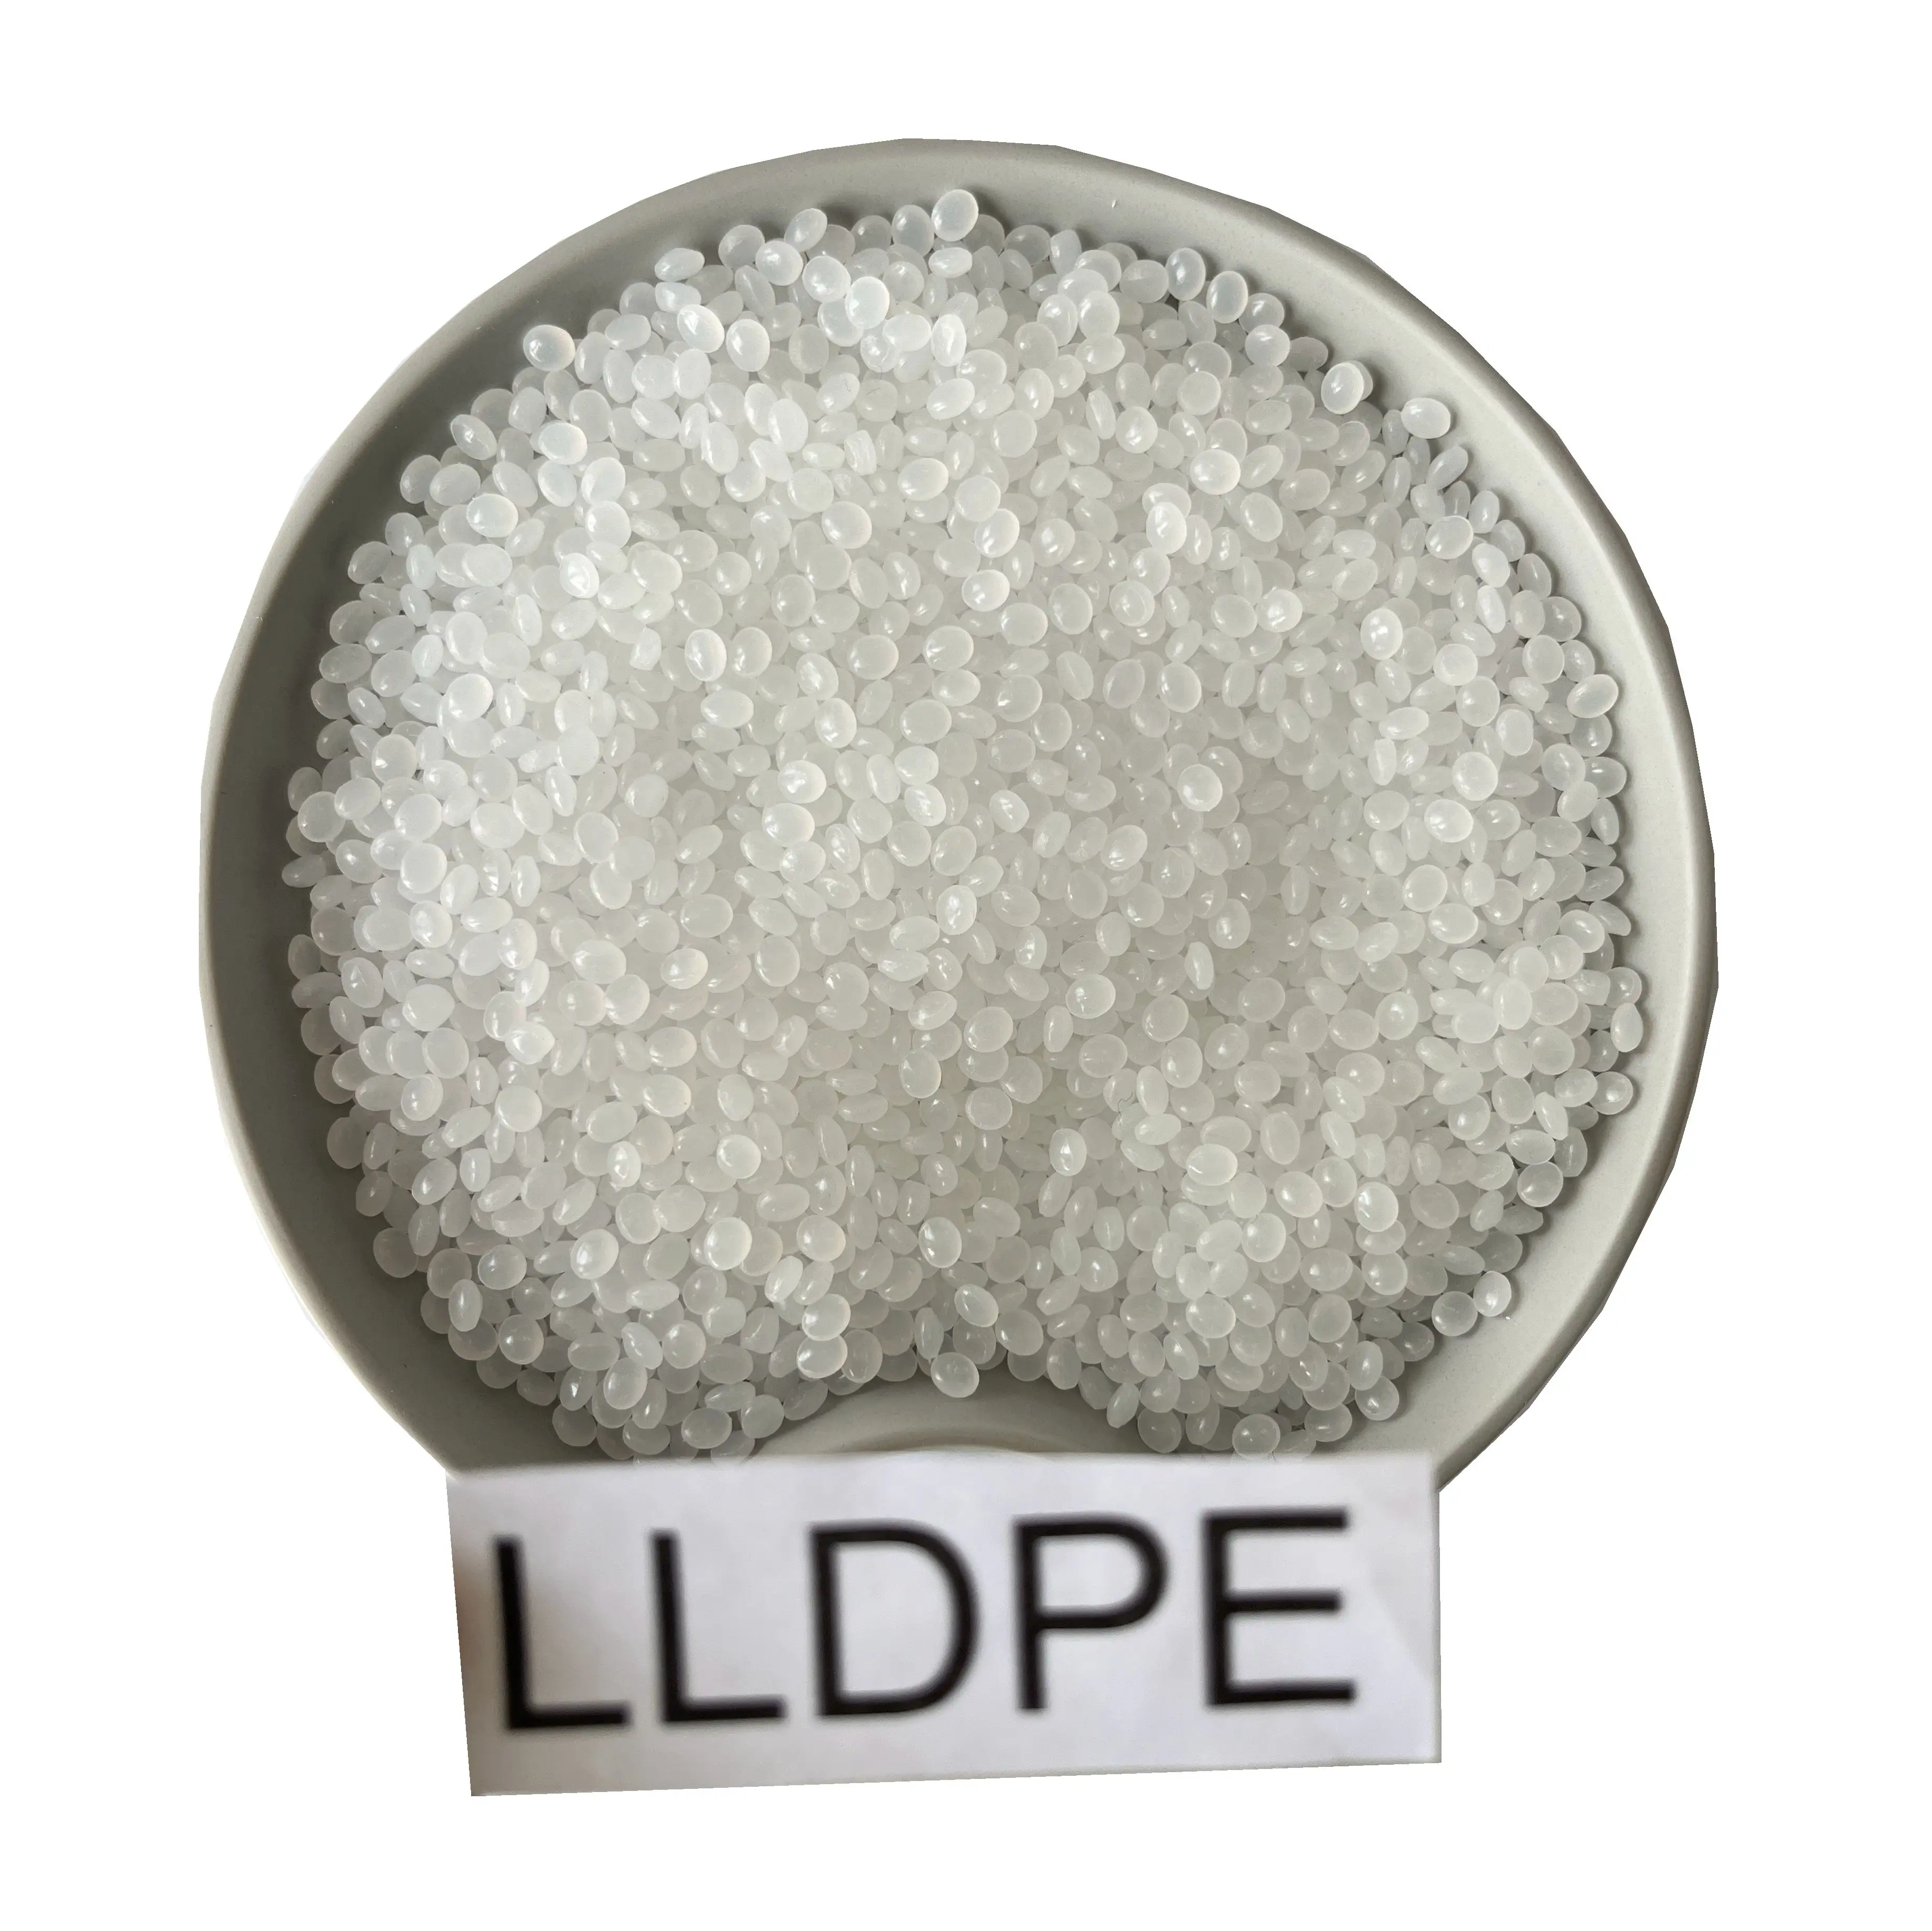 Cina fabbrica di vendere LLDPE granuli di plastica vergine LLDPE materie prime a buon mercato prezzo LLDPE resina